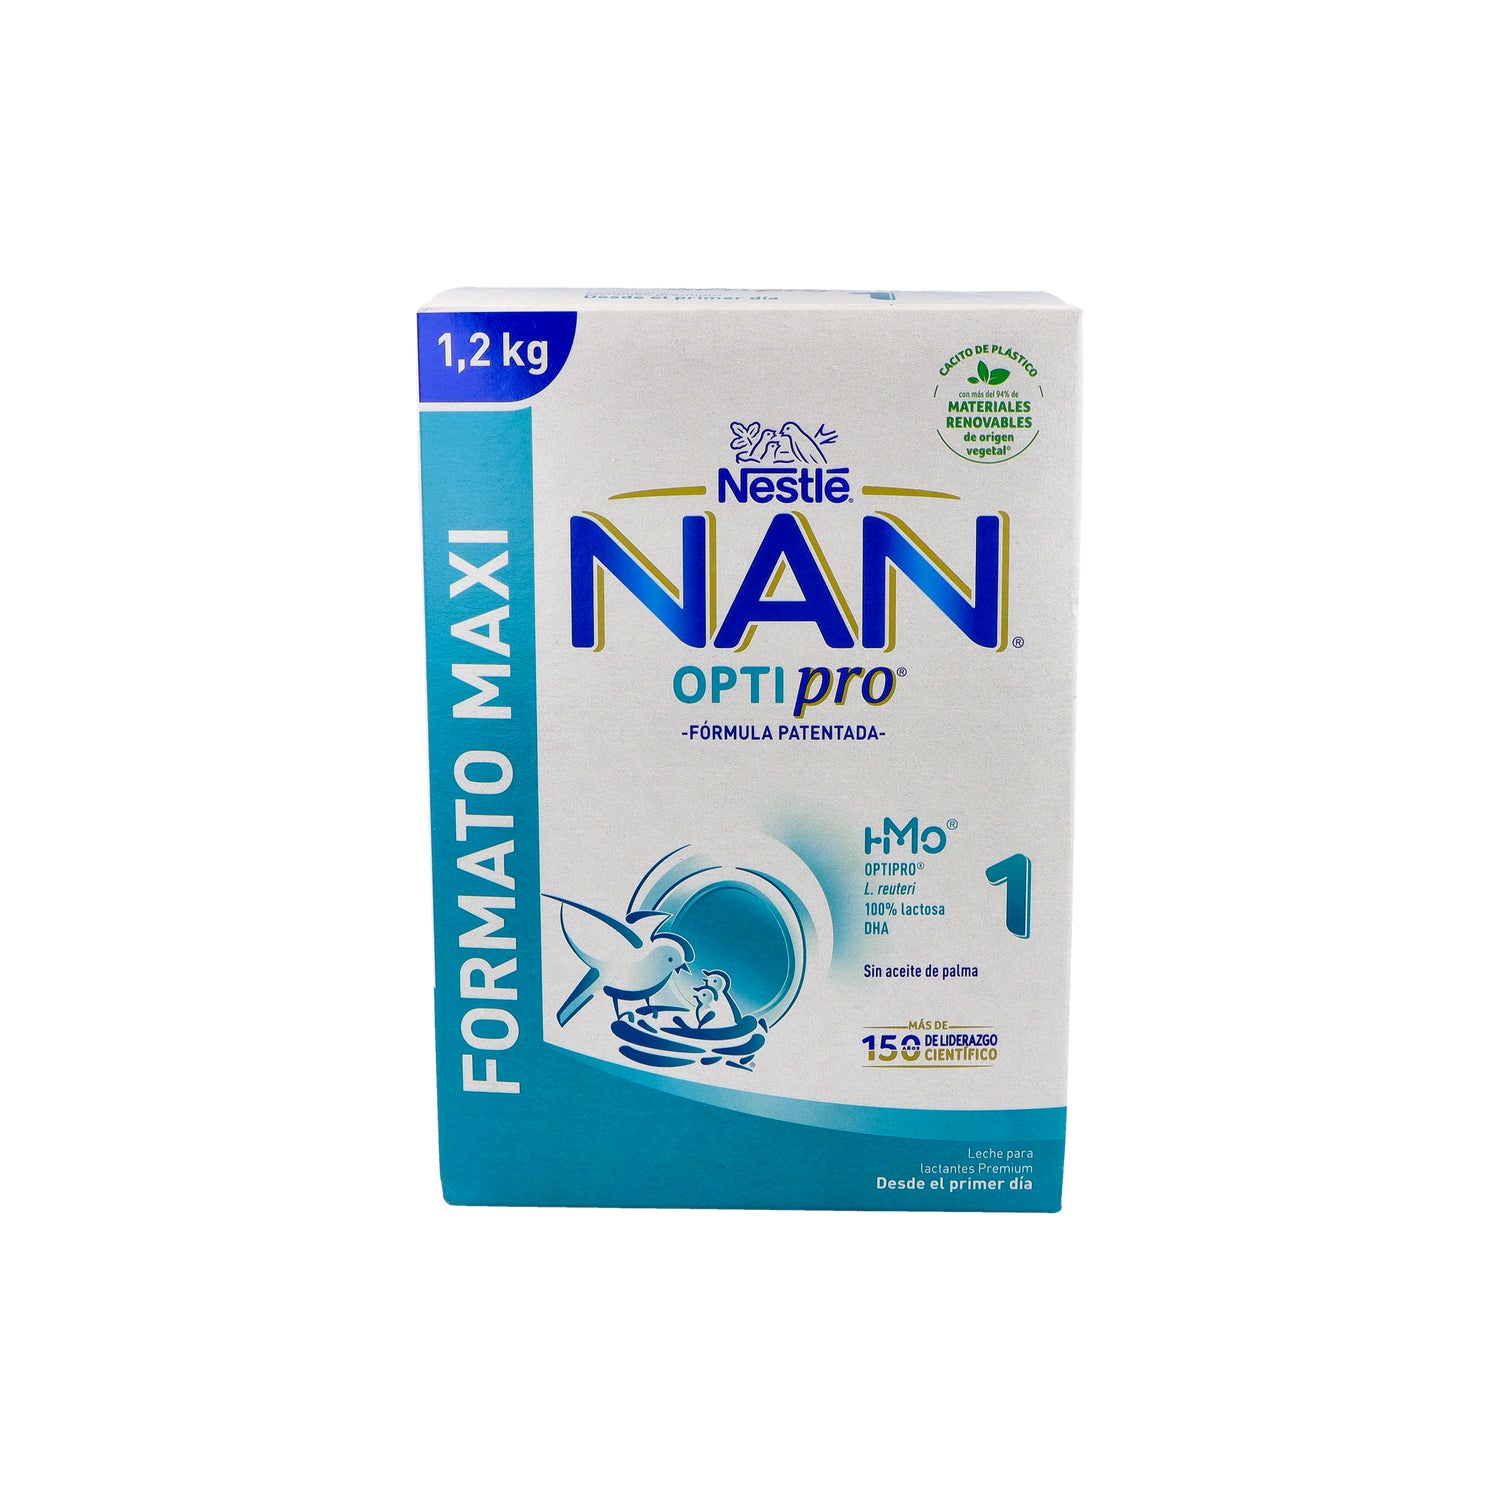 Nan Optipro 1 Infant Milk 800g